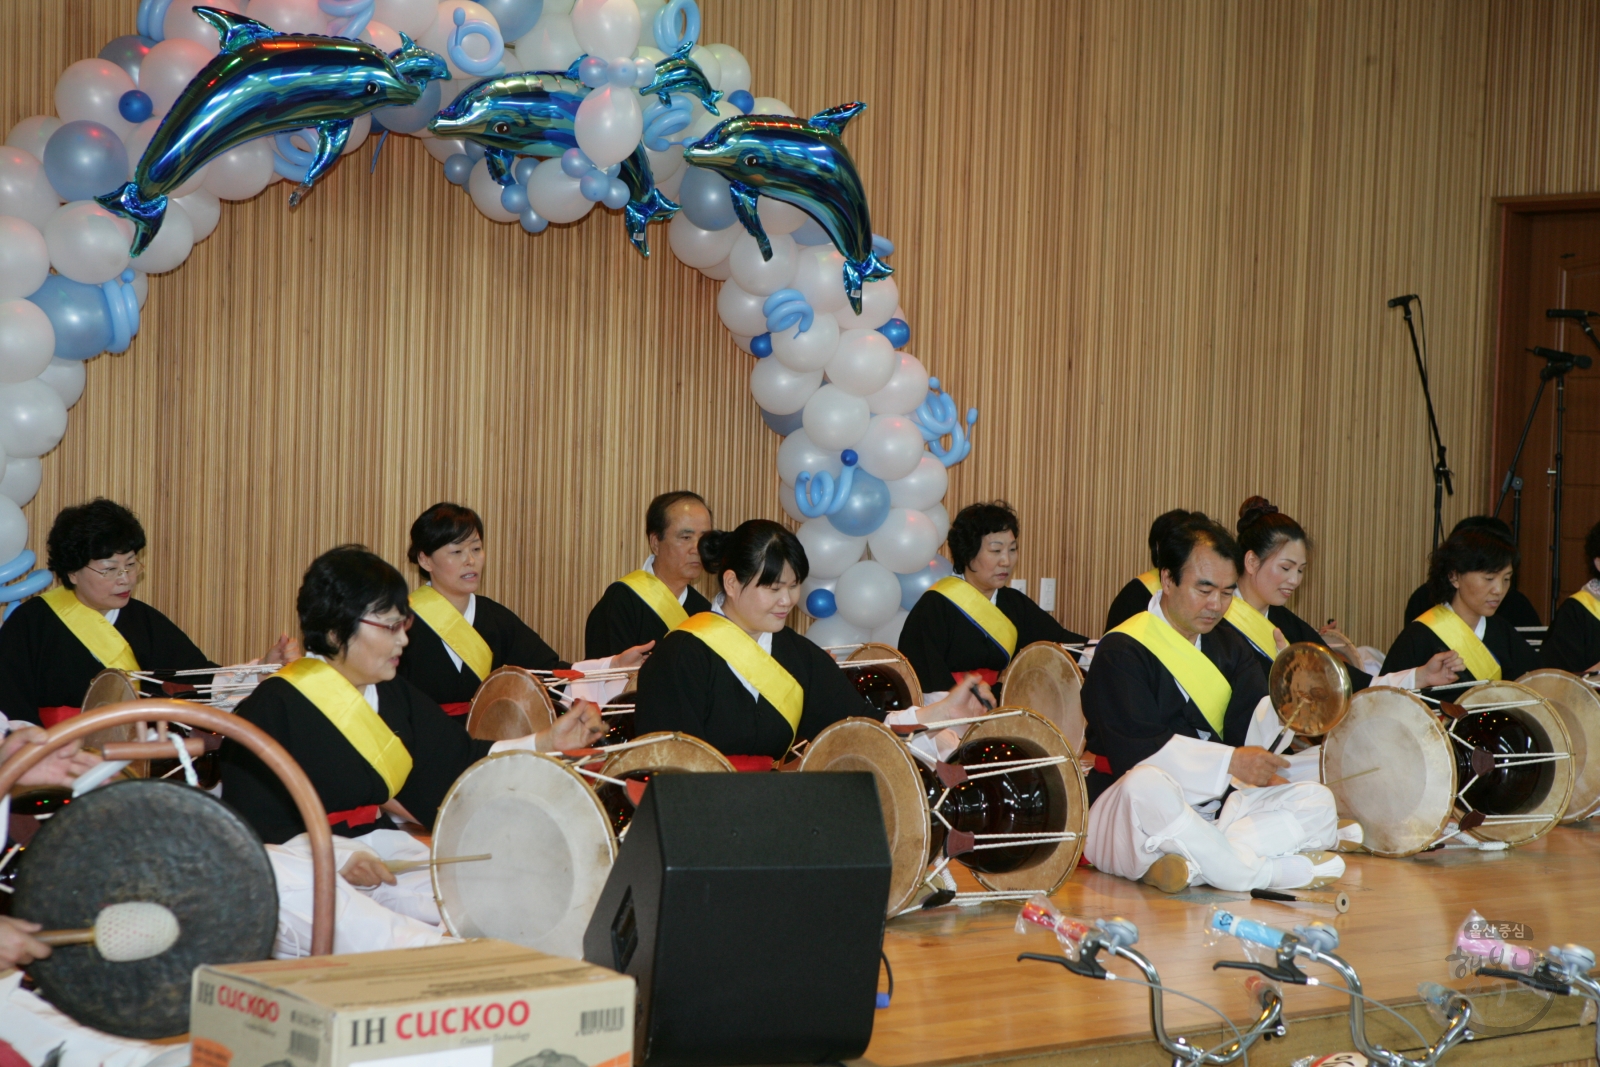 2009 대현동주민자치센터 프로그램 발표회 의 사진